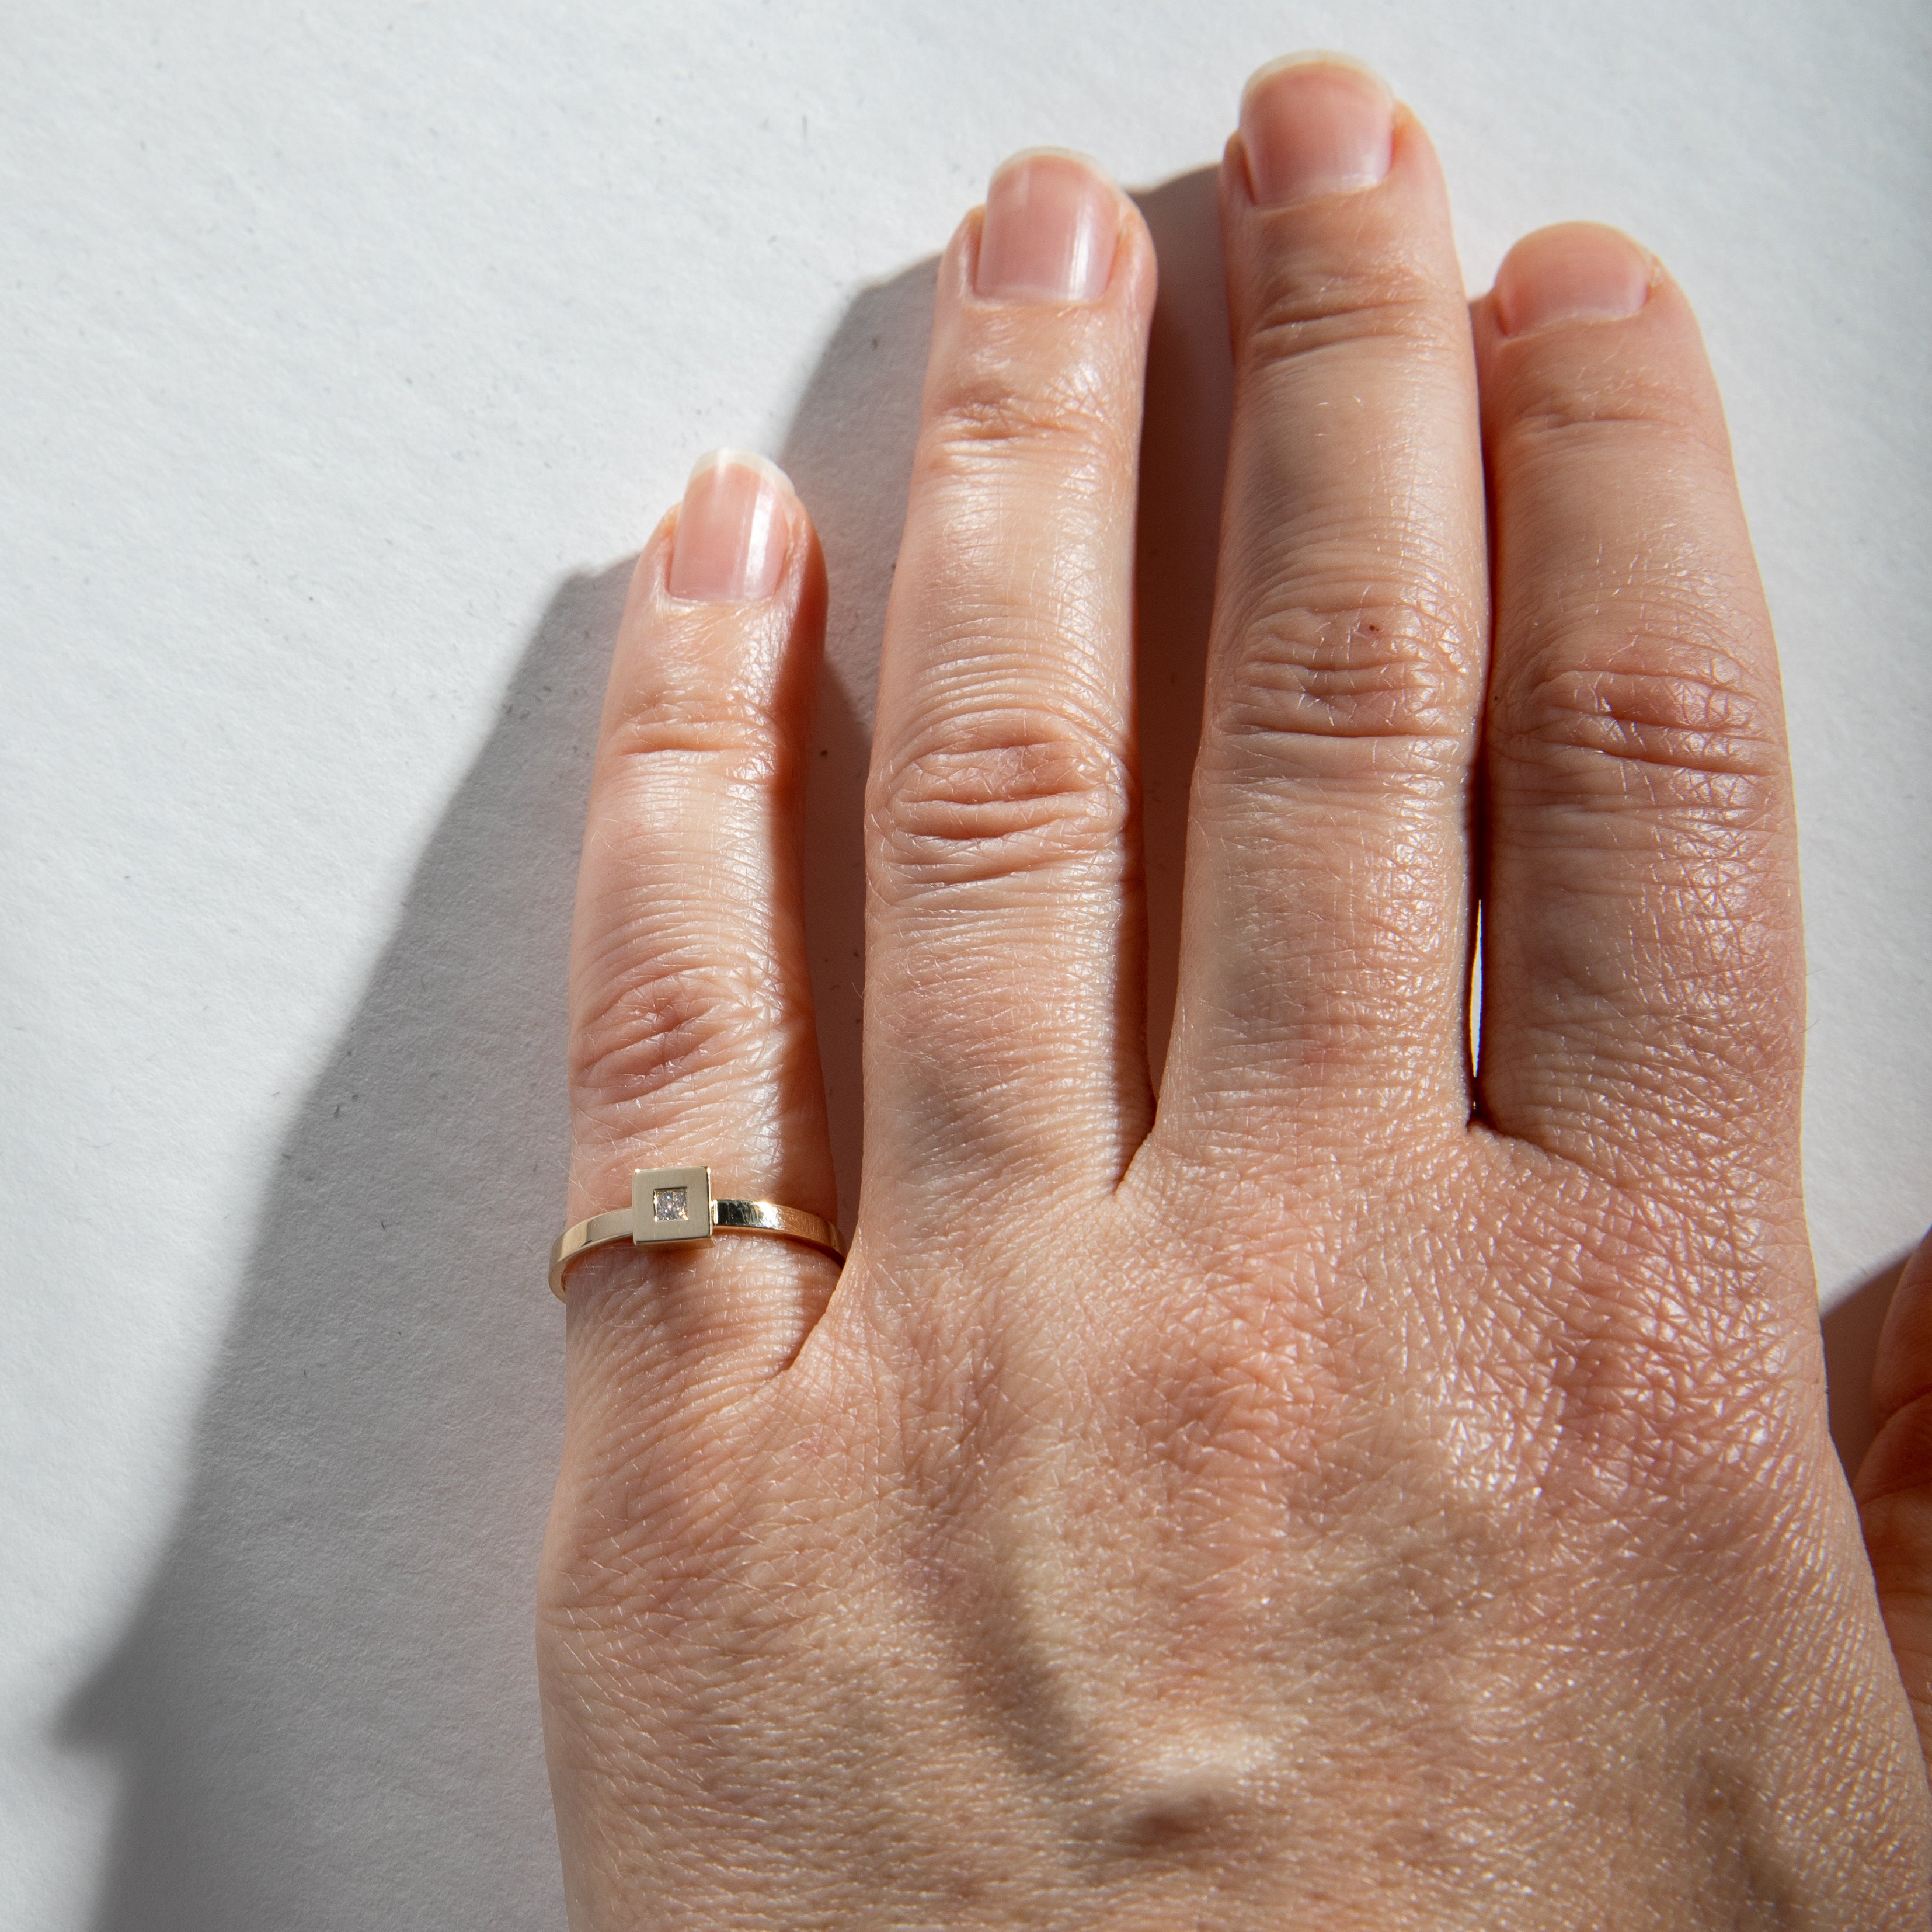 Sada Minimalist Ring in 14k Gold set with lab-grown diamonds By SHW Fine Jewelry New York City